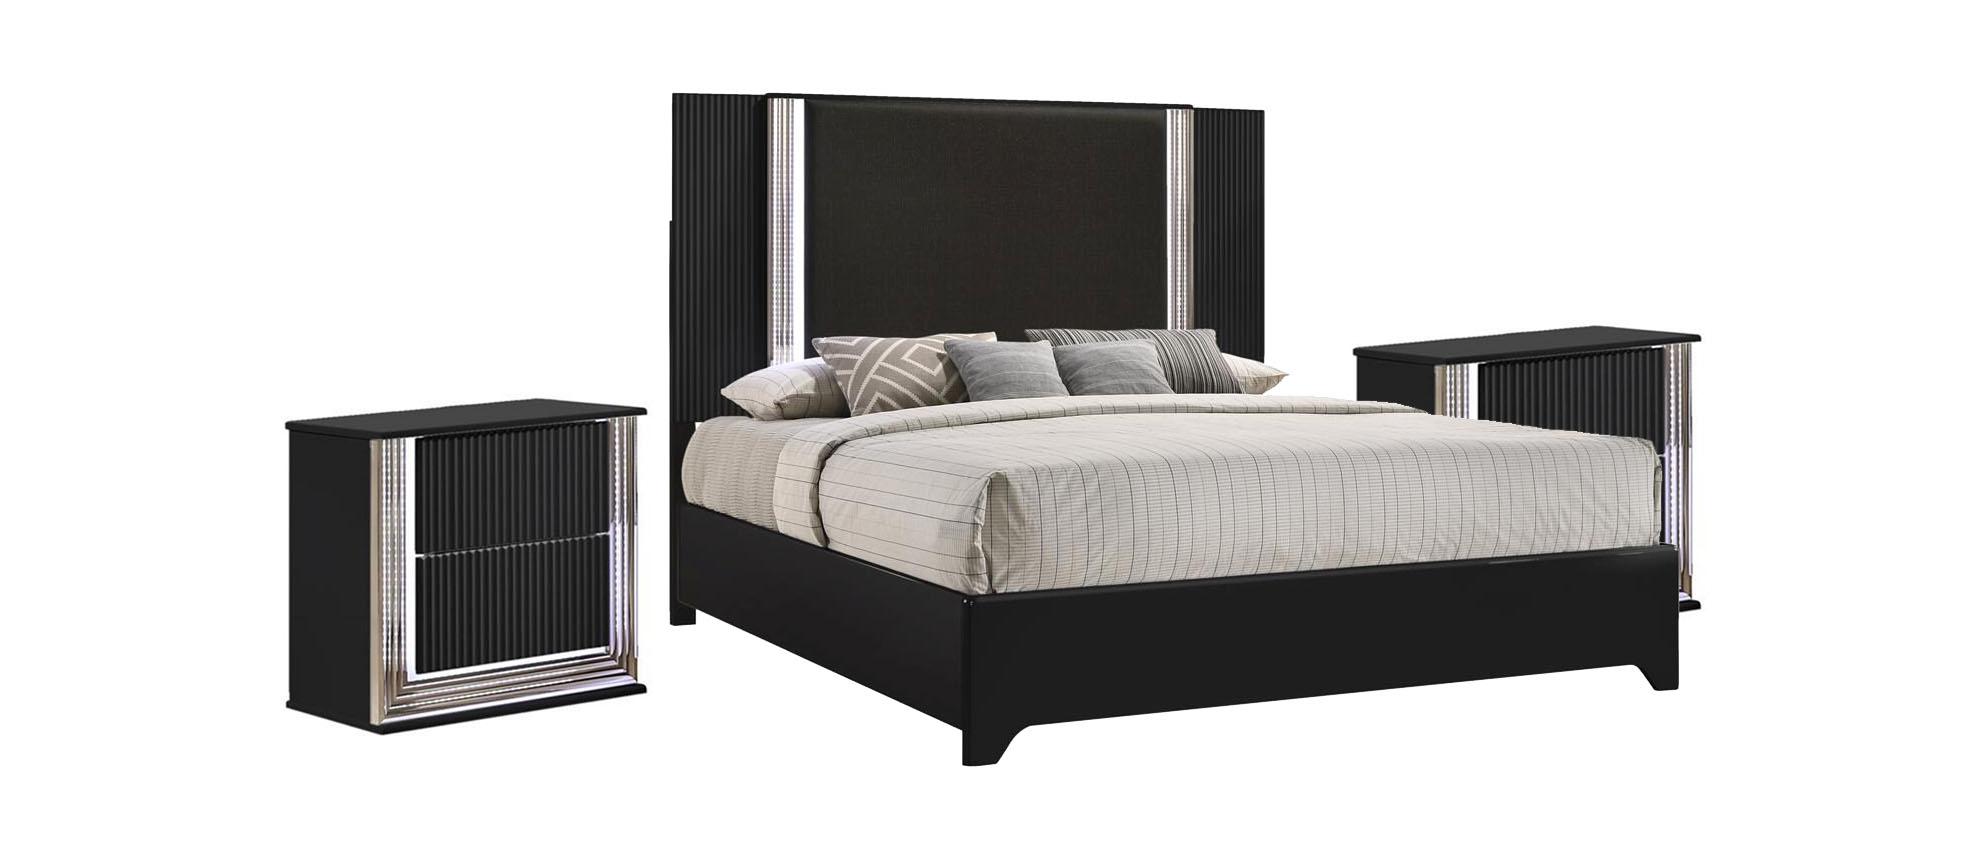 Modern Platform Bedroom Set ASPEN ASPEN-BLACK-KB-Set-3 in Black Faux Leather